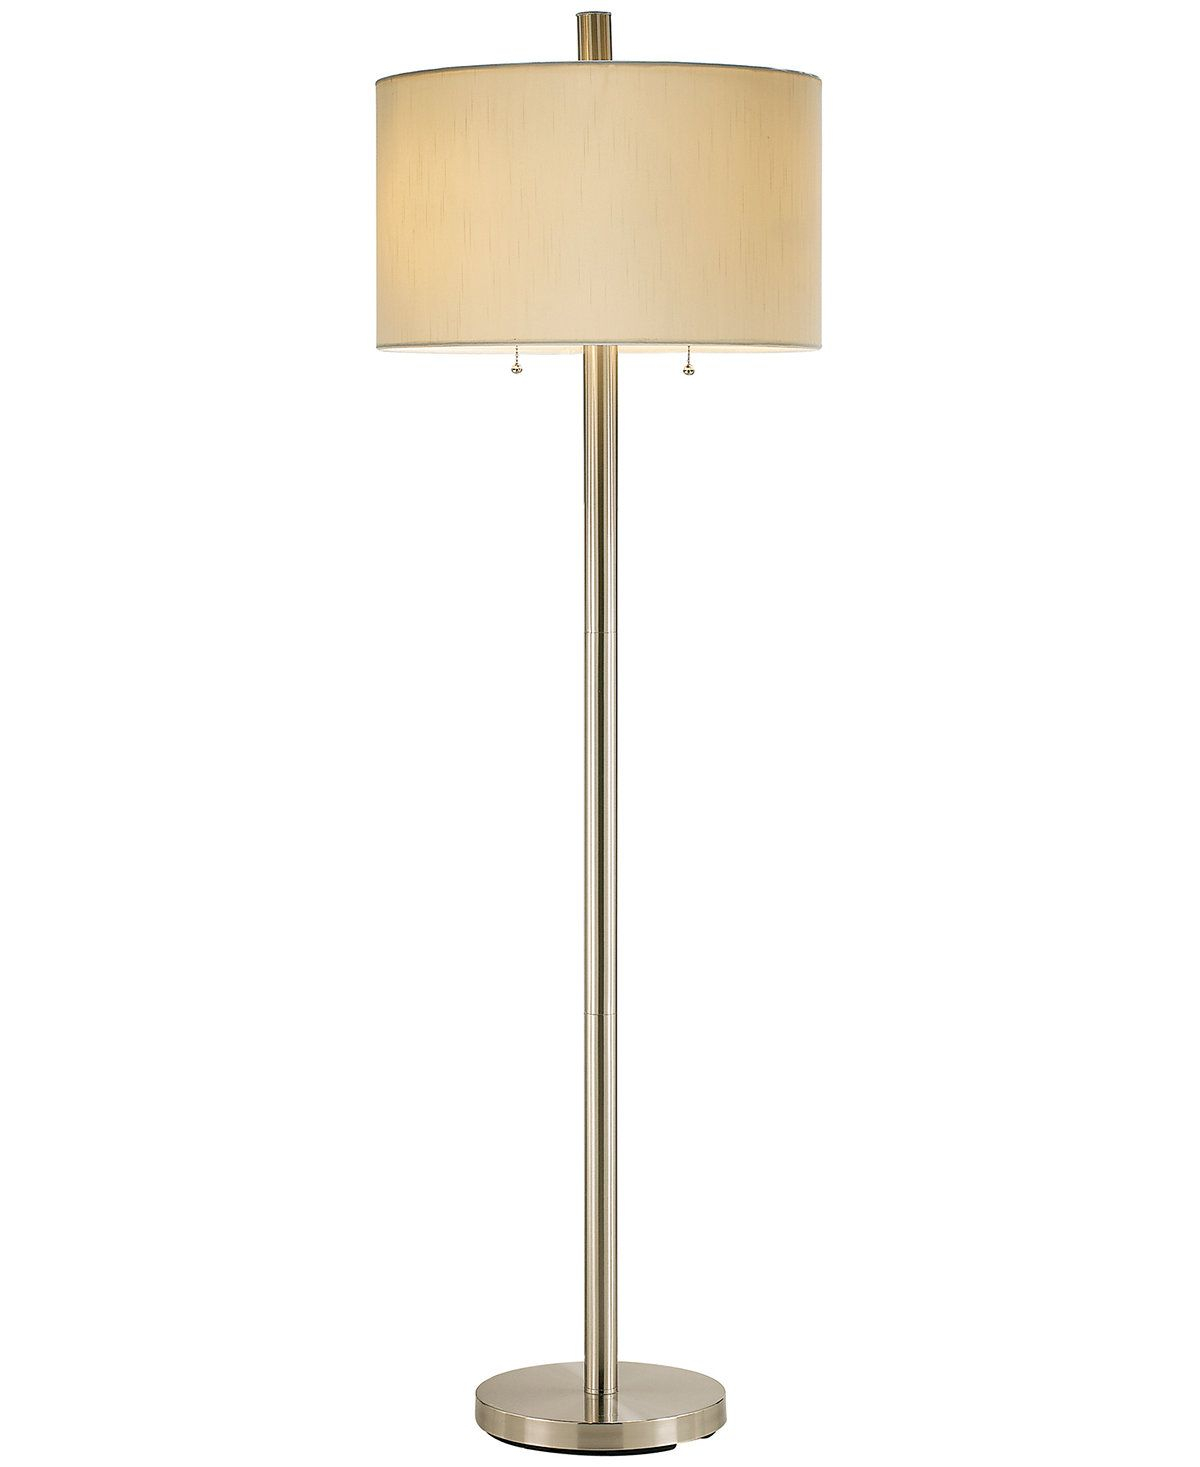 Boulevard Floor Lamp House Floor Lamp Lighting Lamp Light inside dimensions 1200 X 1467